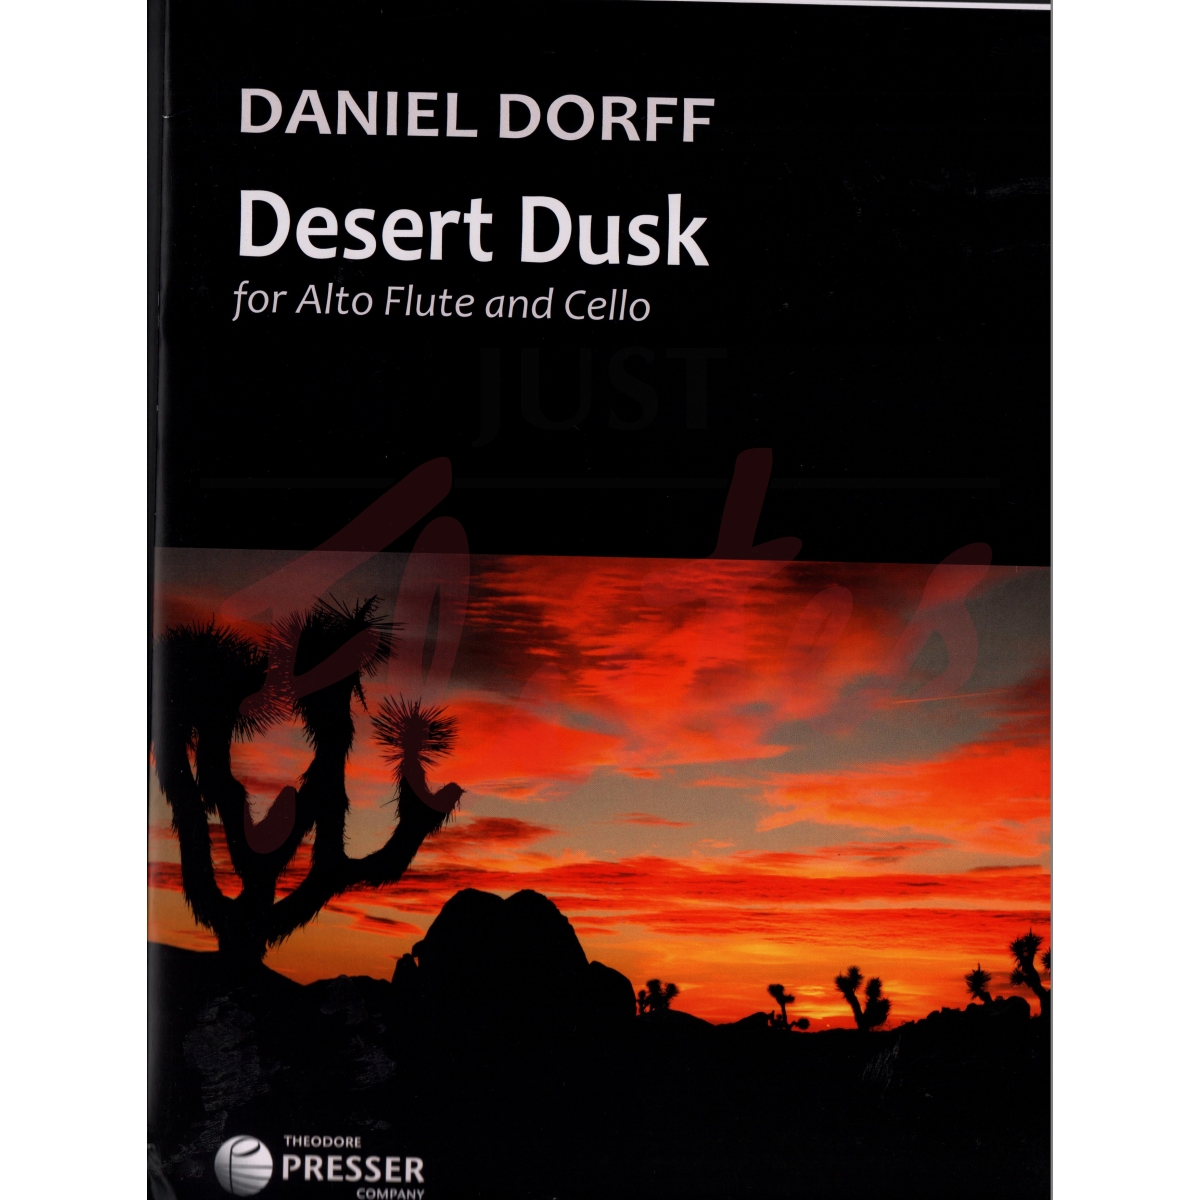 Desert Dusk for Alto Flute and Cello